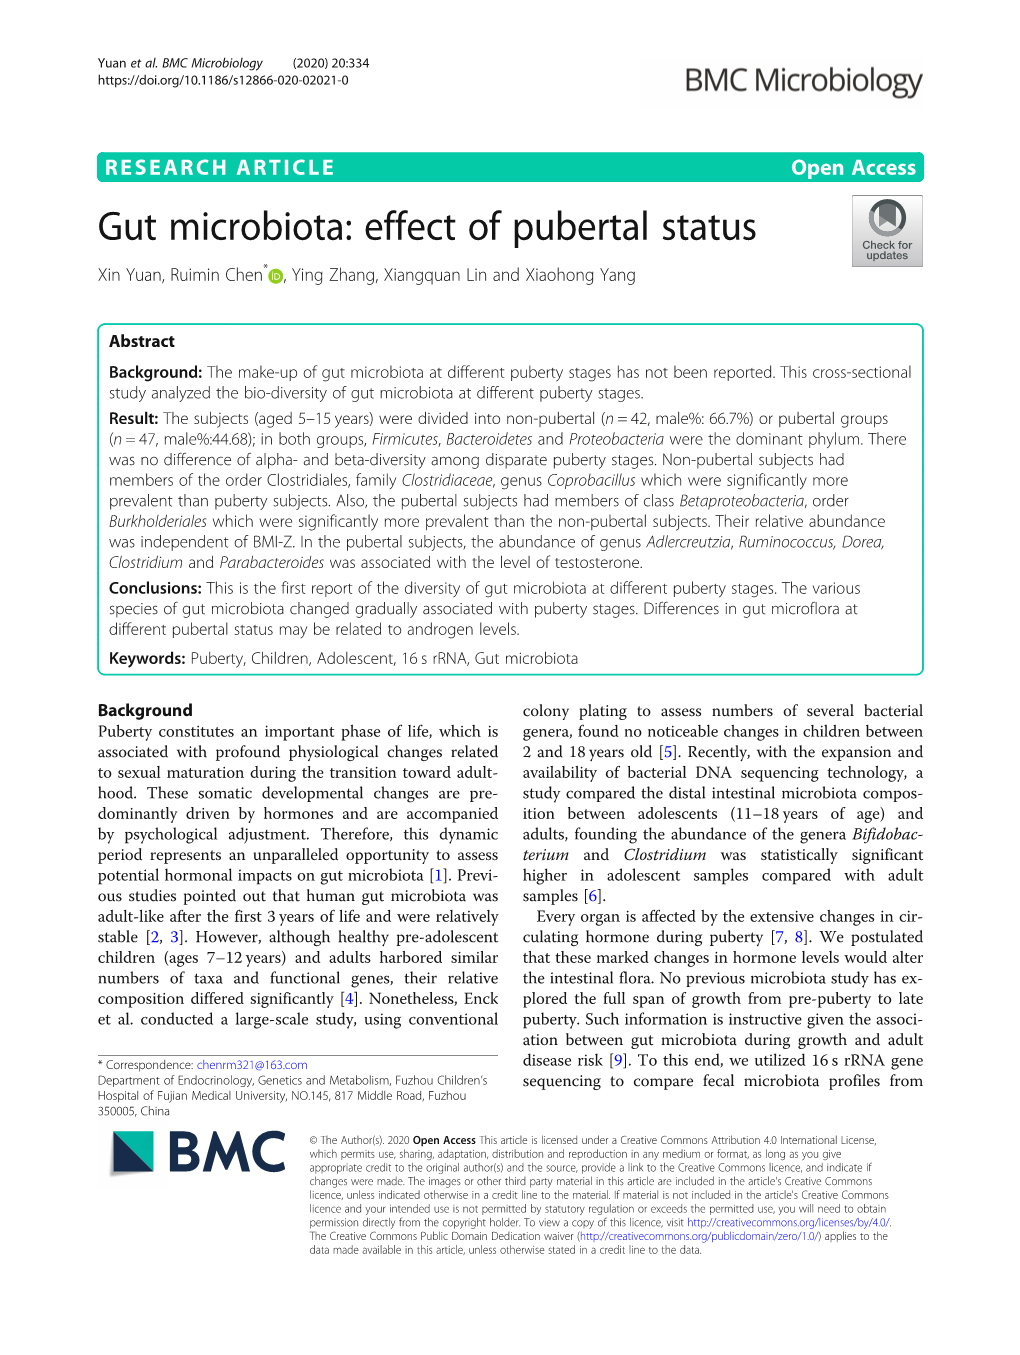 Gut Microbiota: Effect of Pubertal Status Xin Yuan, Ruimin Chen* , Ying Zhang, Xiangquan Lin and Xiaohong Yang